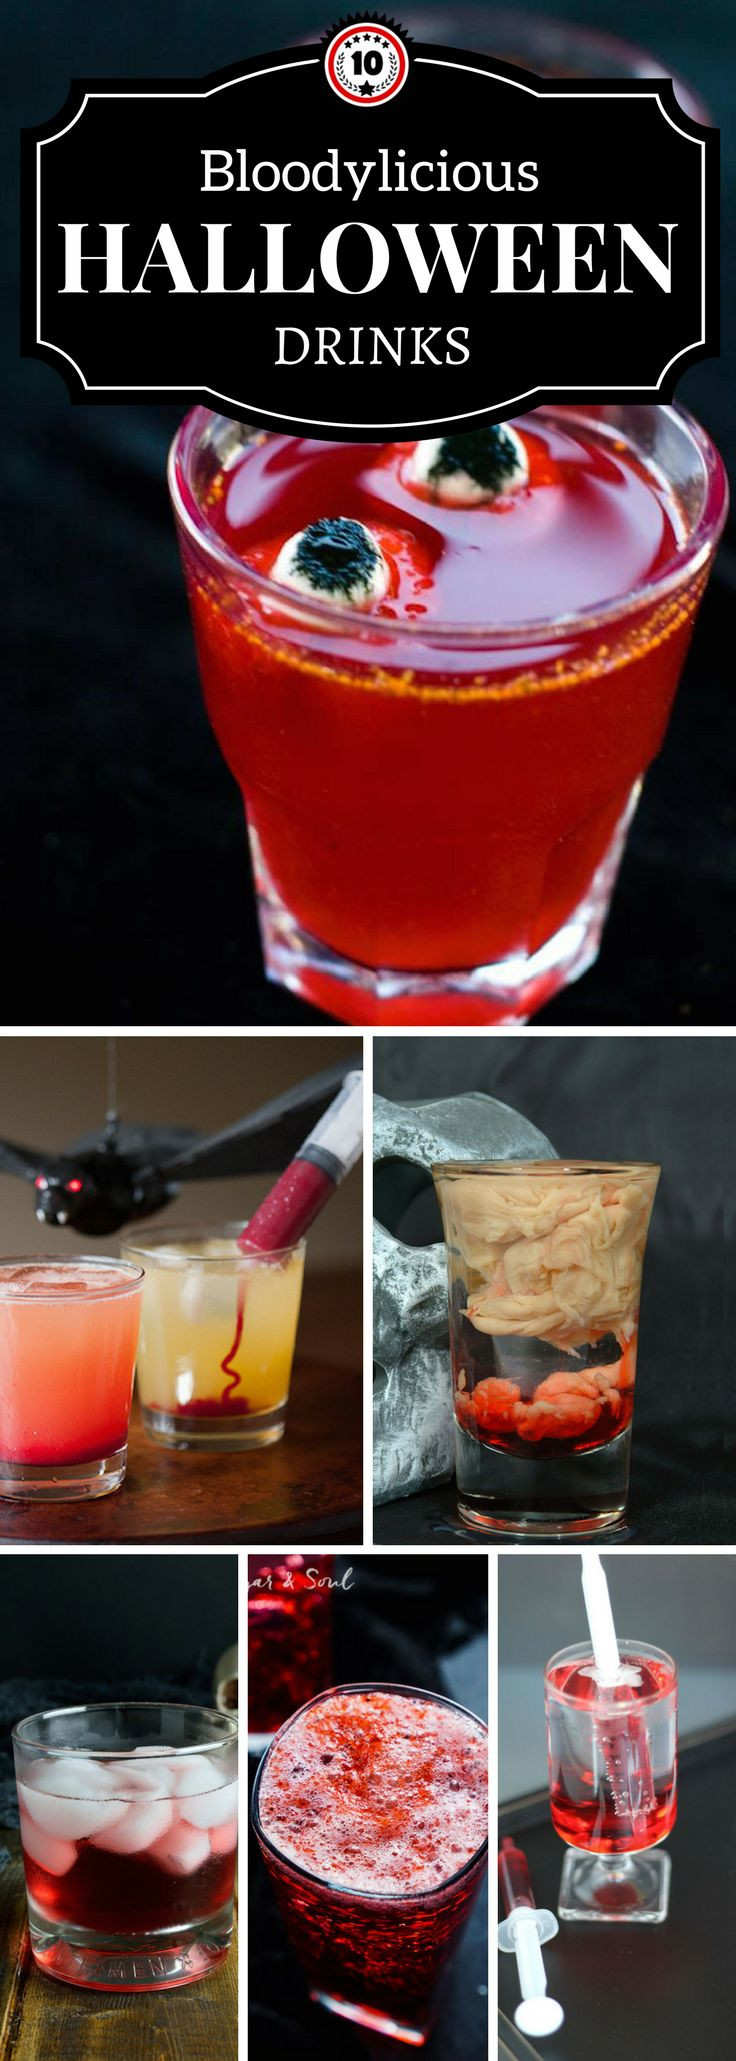 Halloween Drinks Alcoholic
 Best 25 Halloween drinks ideas on Pinterest